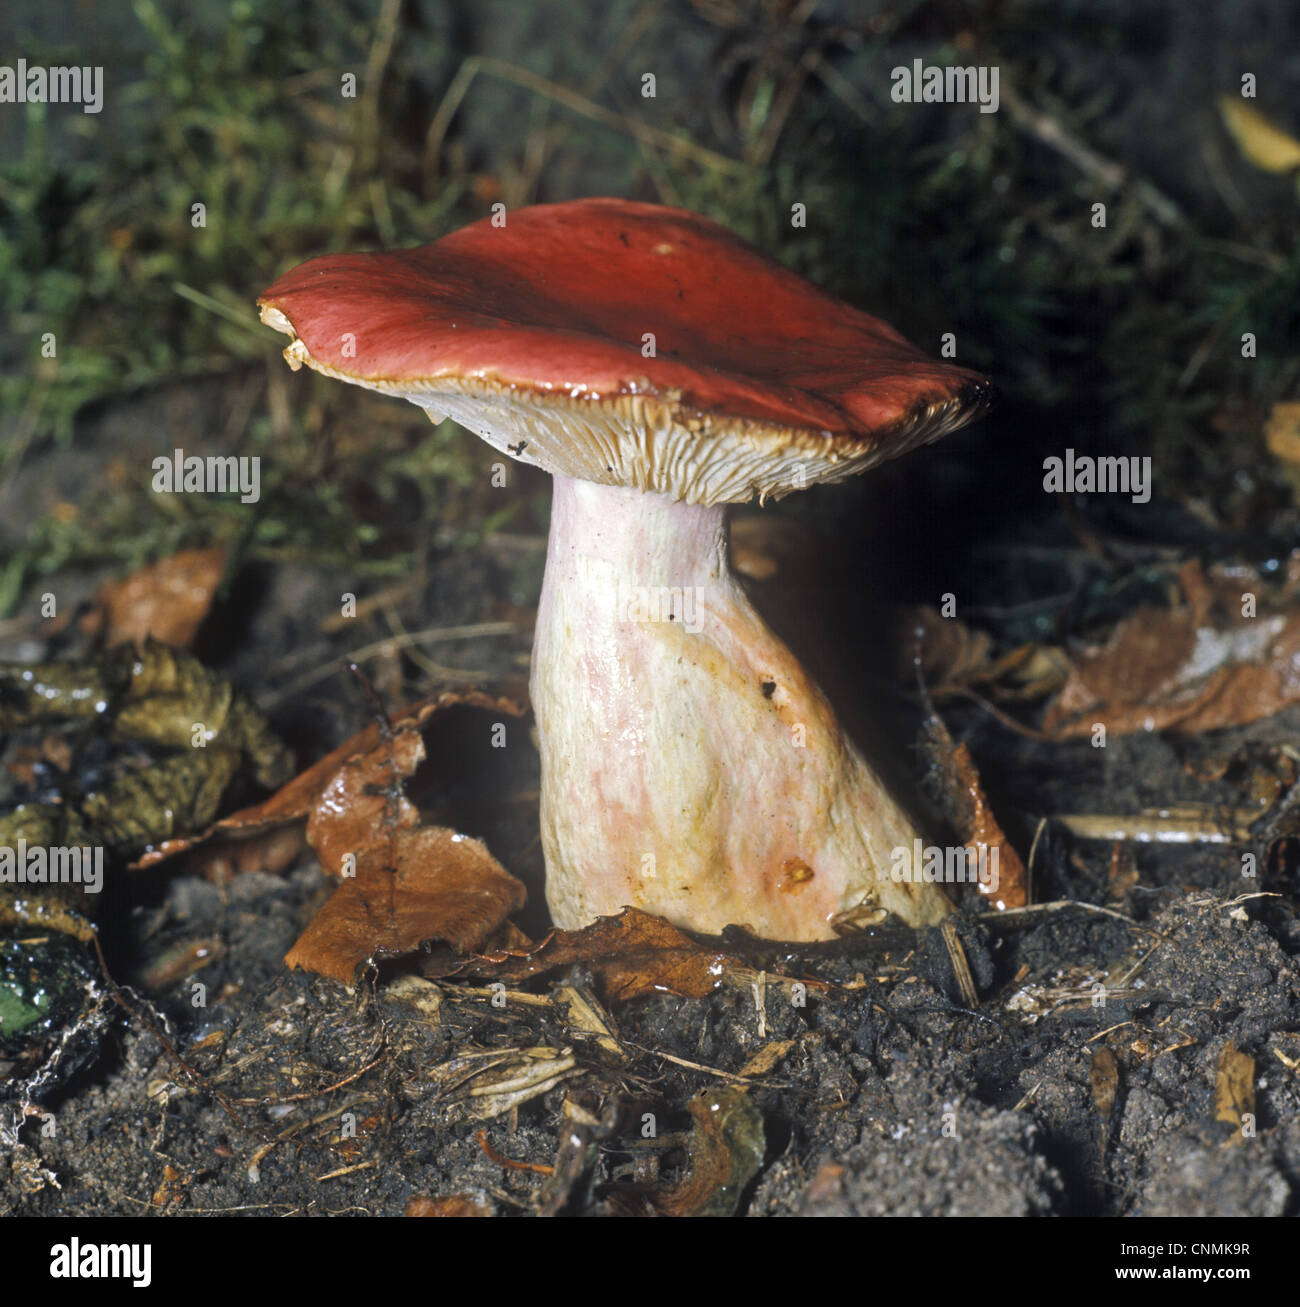 Fungi - Russula sanguinea Stock Photo